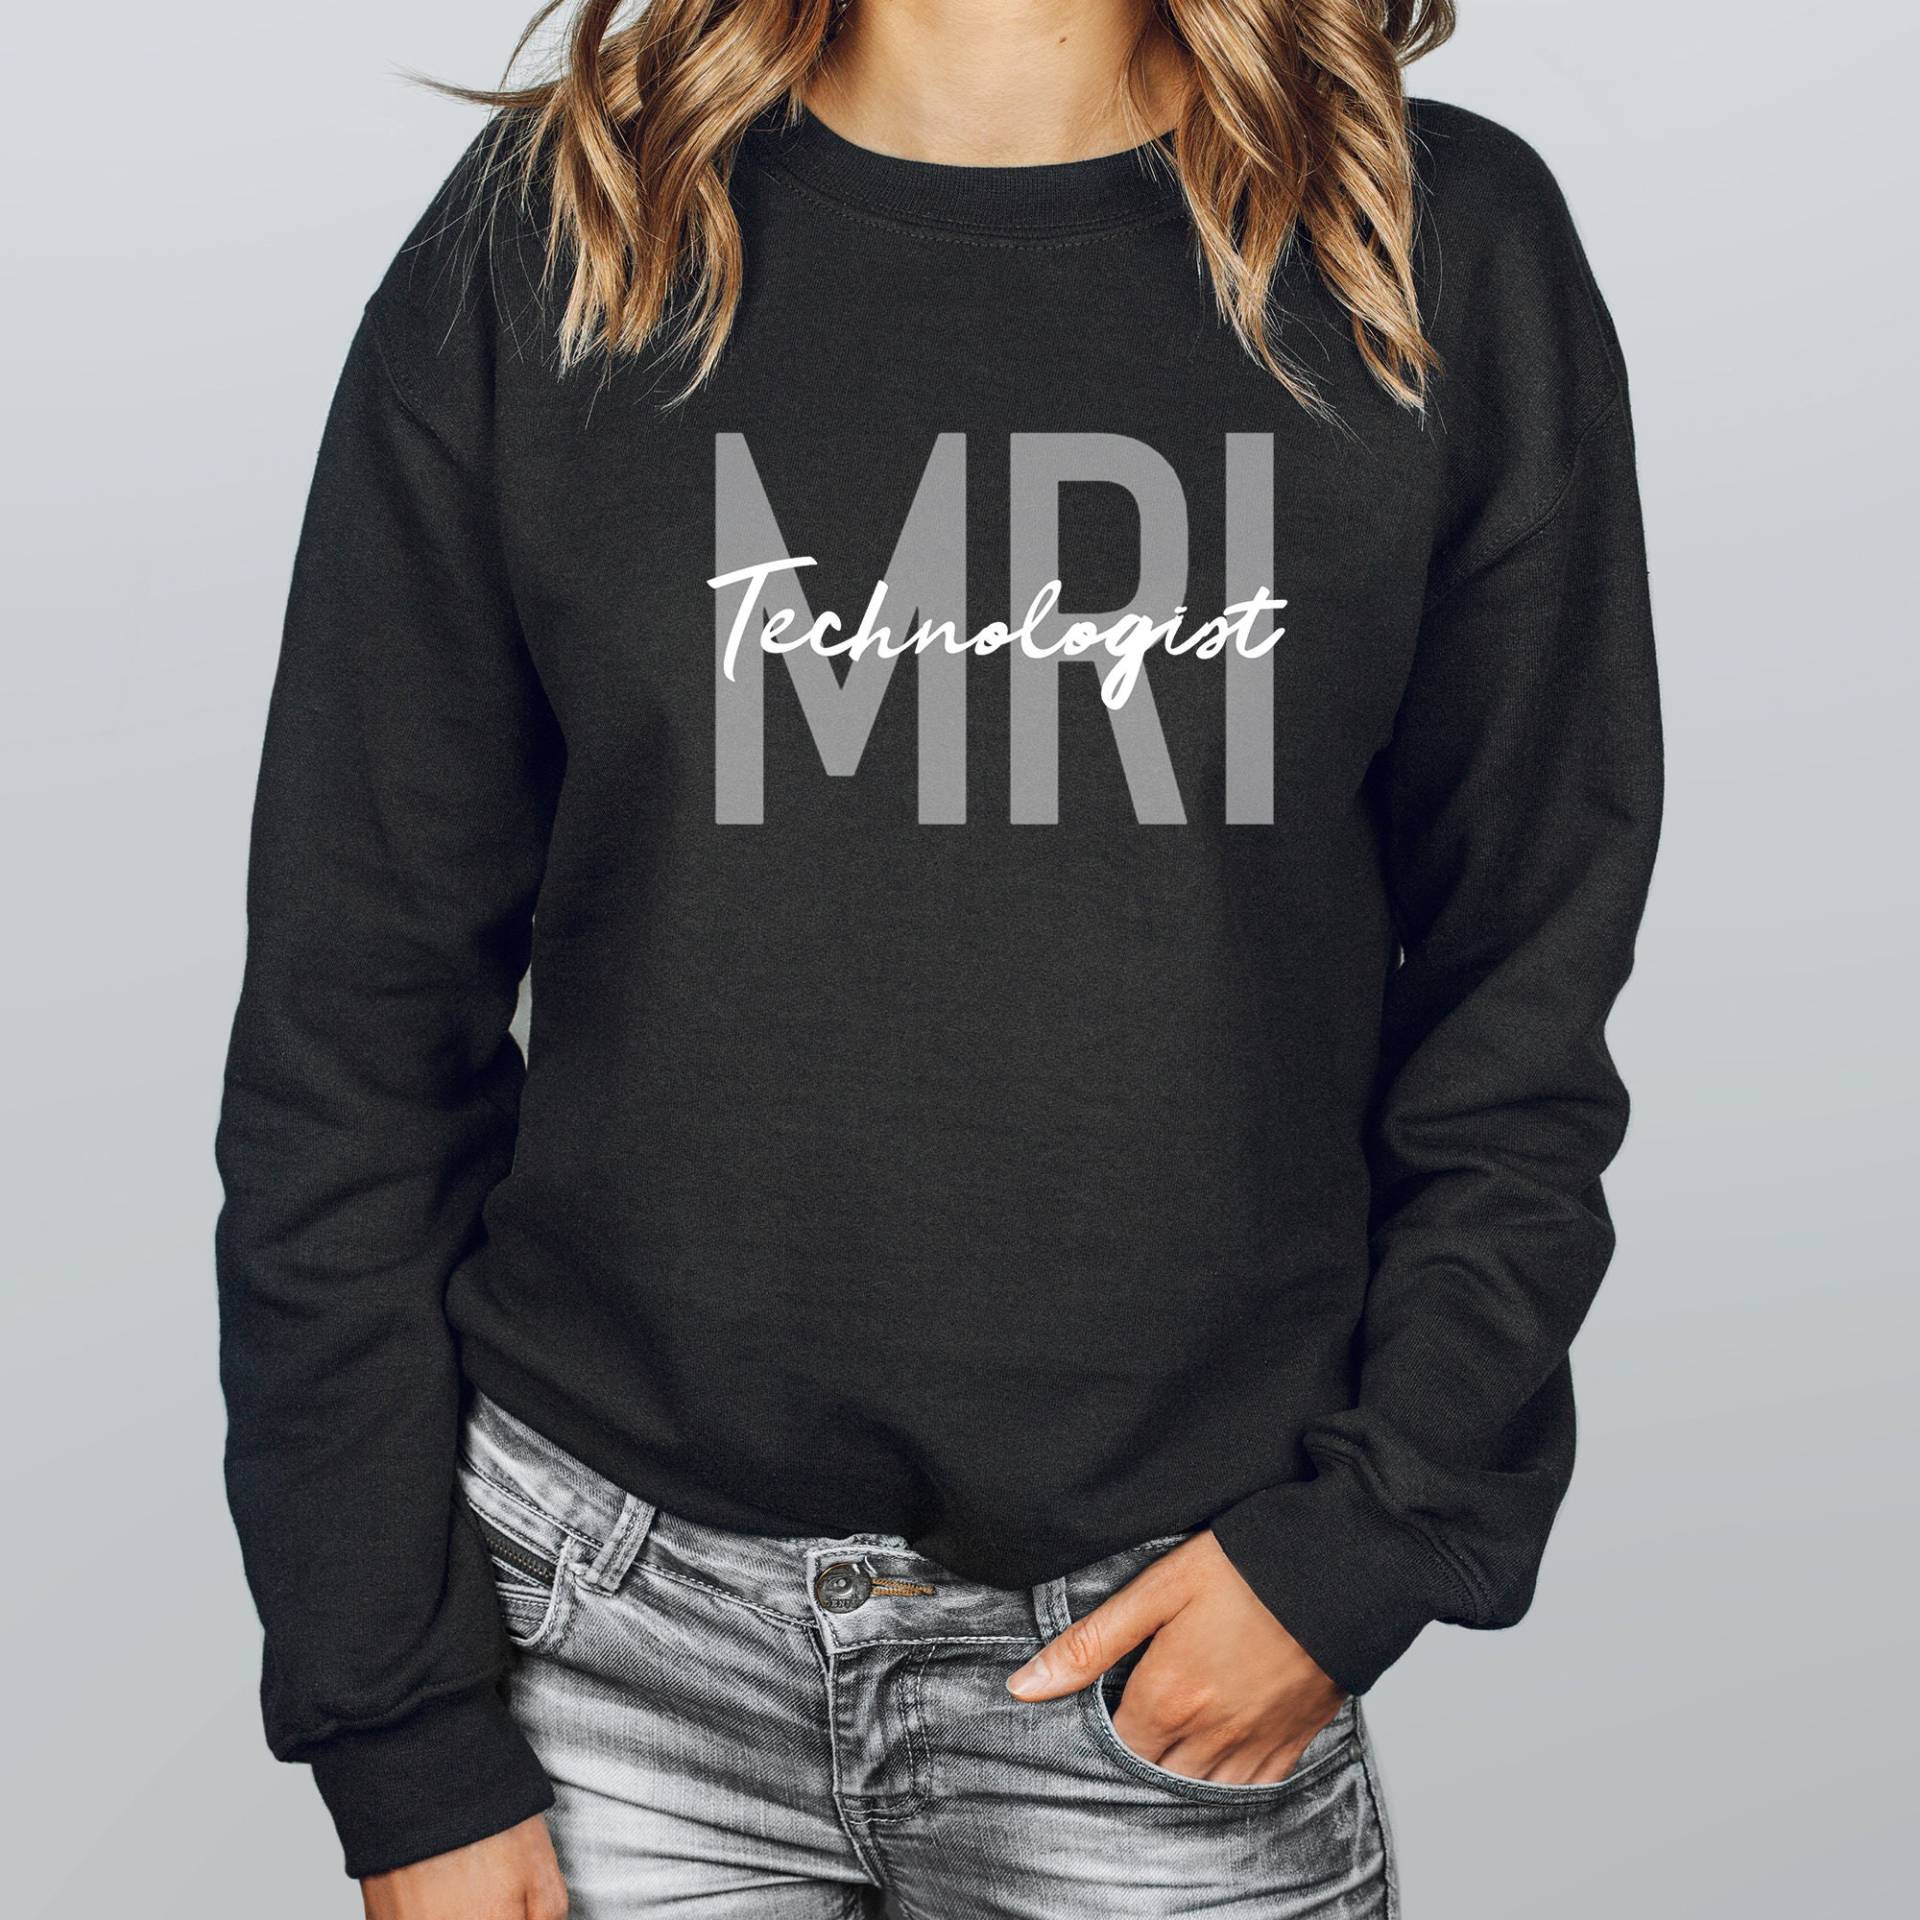 Mri Technologist Sweatshirt | Tech Pullover Shirt Rad Xray T-Shirt Radiograf Geschenk Für von APComfortPrints